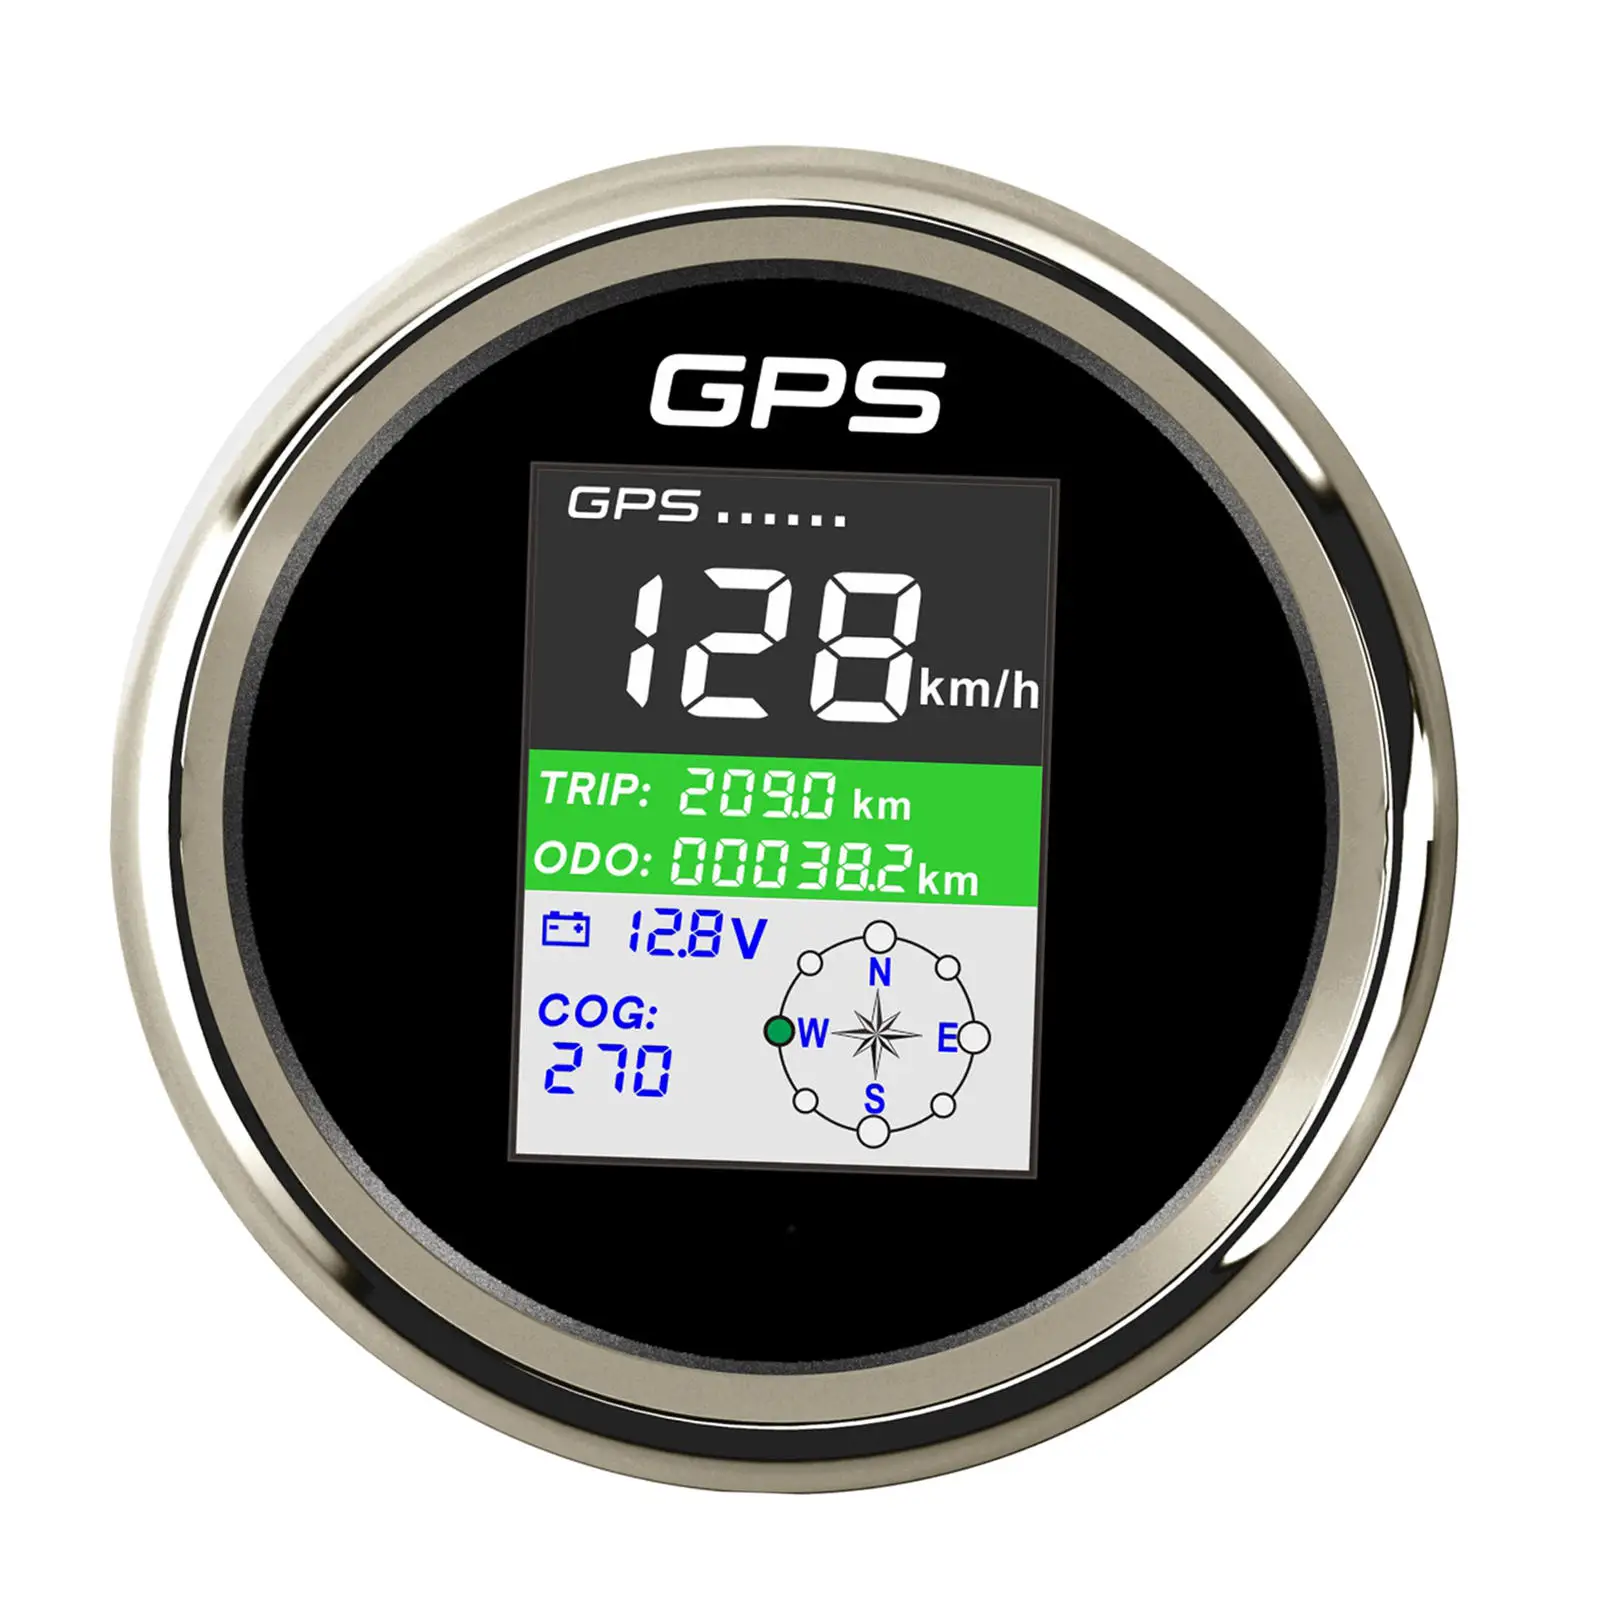 GPS Speedometer Gauge, Backlight LCD PLG3-BS-GPS Waterproof Adjustable Mileage Digital 85mm for Boat Motorcycle Truck Cars